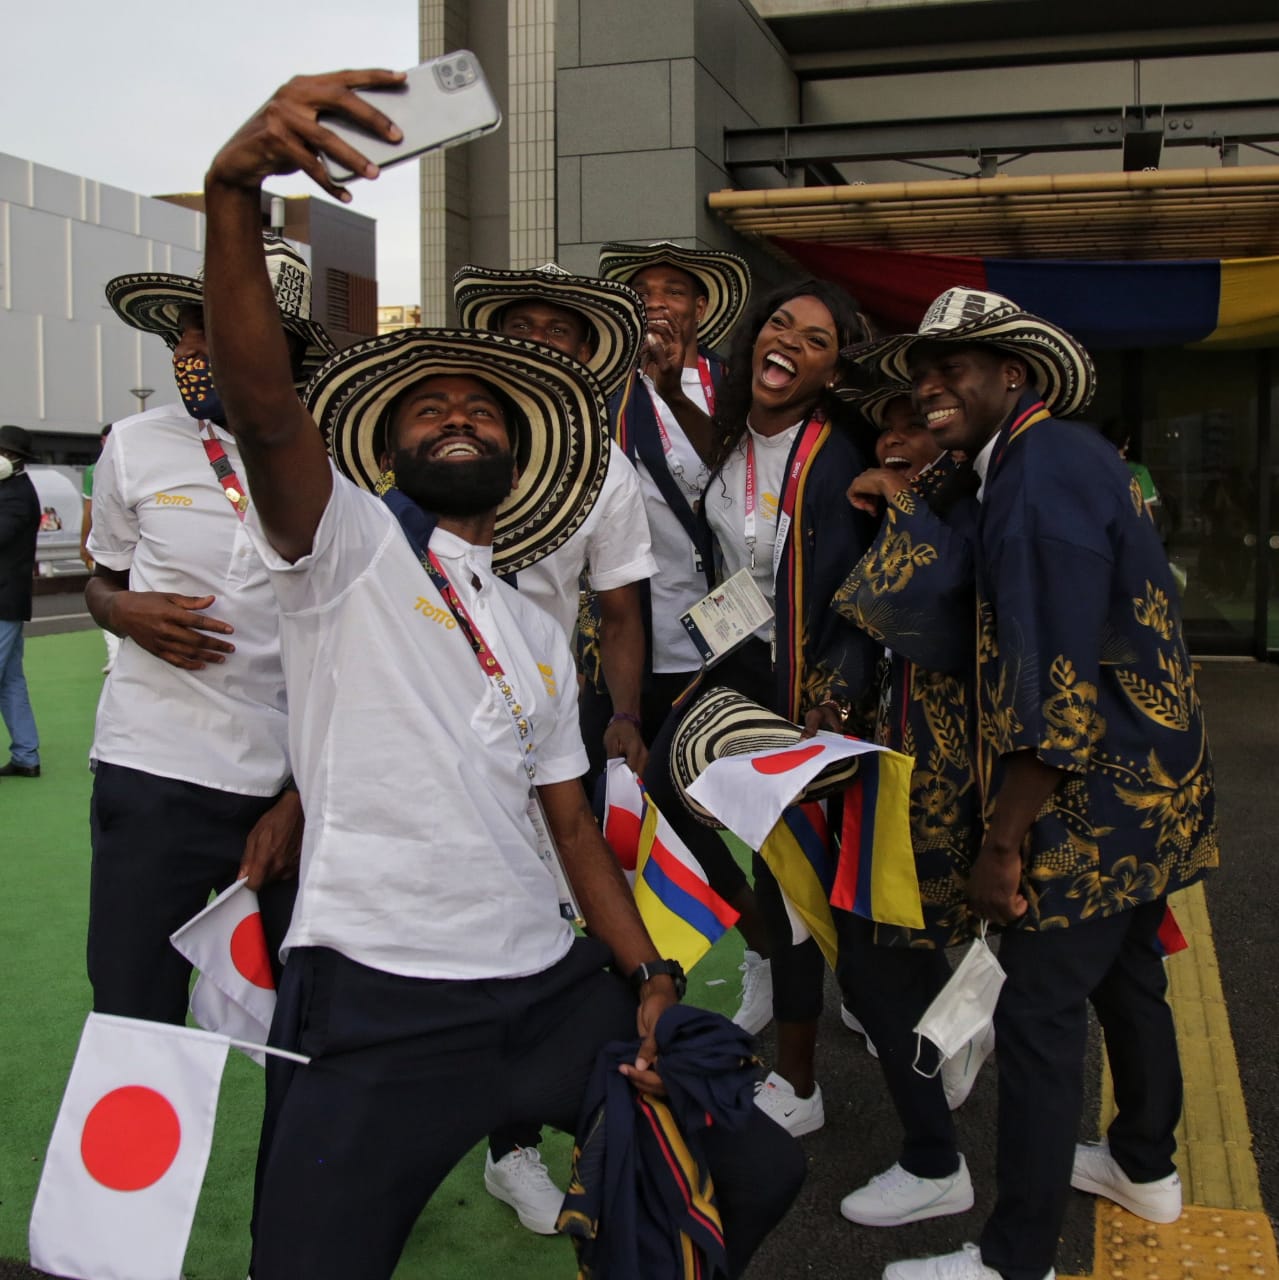 La delegación colombiana previo a su entrada al estadio Olímpico.